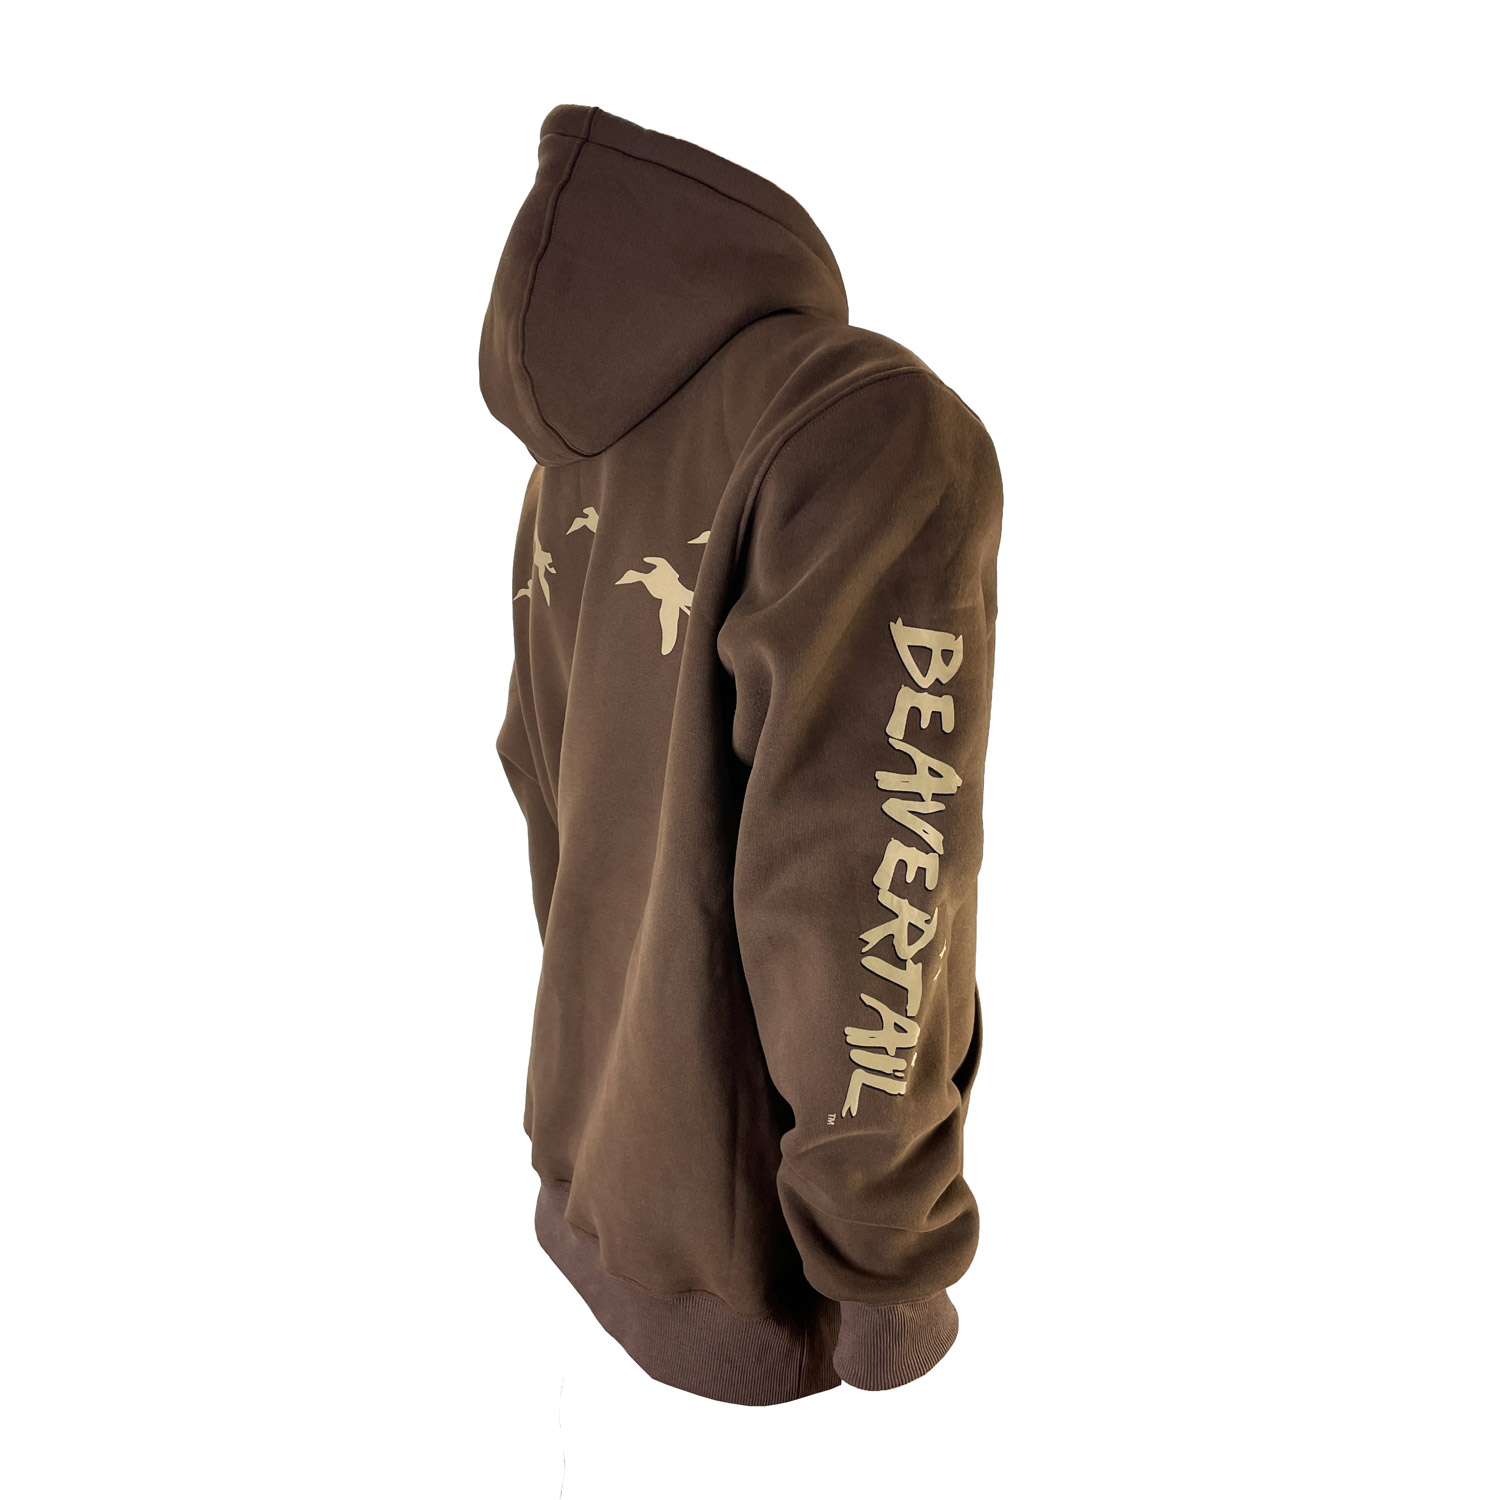 Brown hoodies